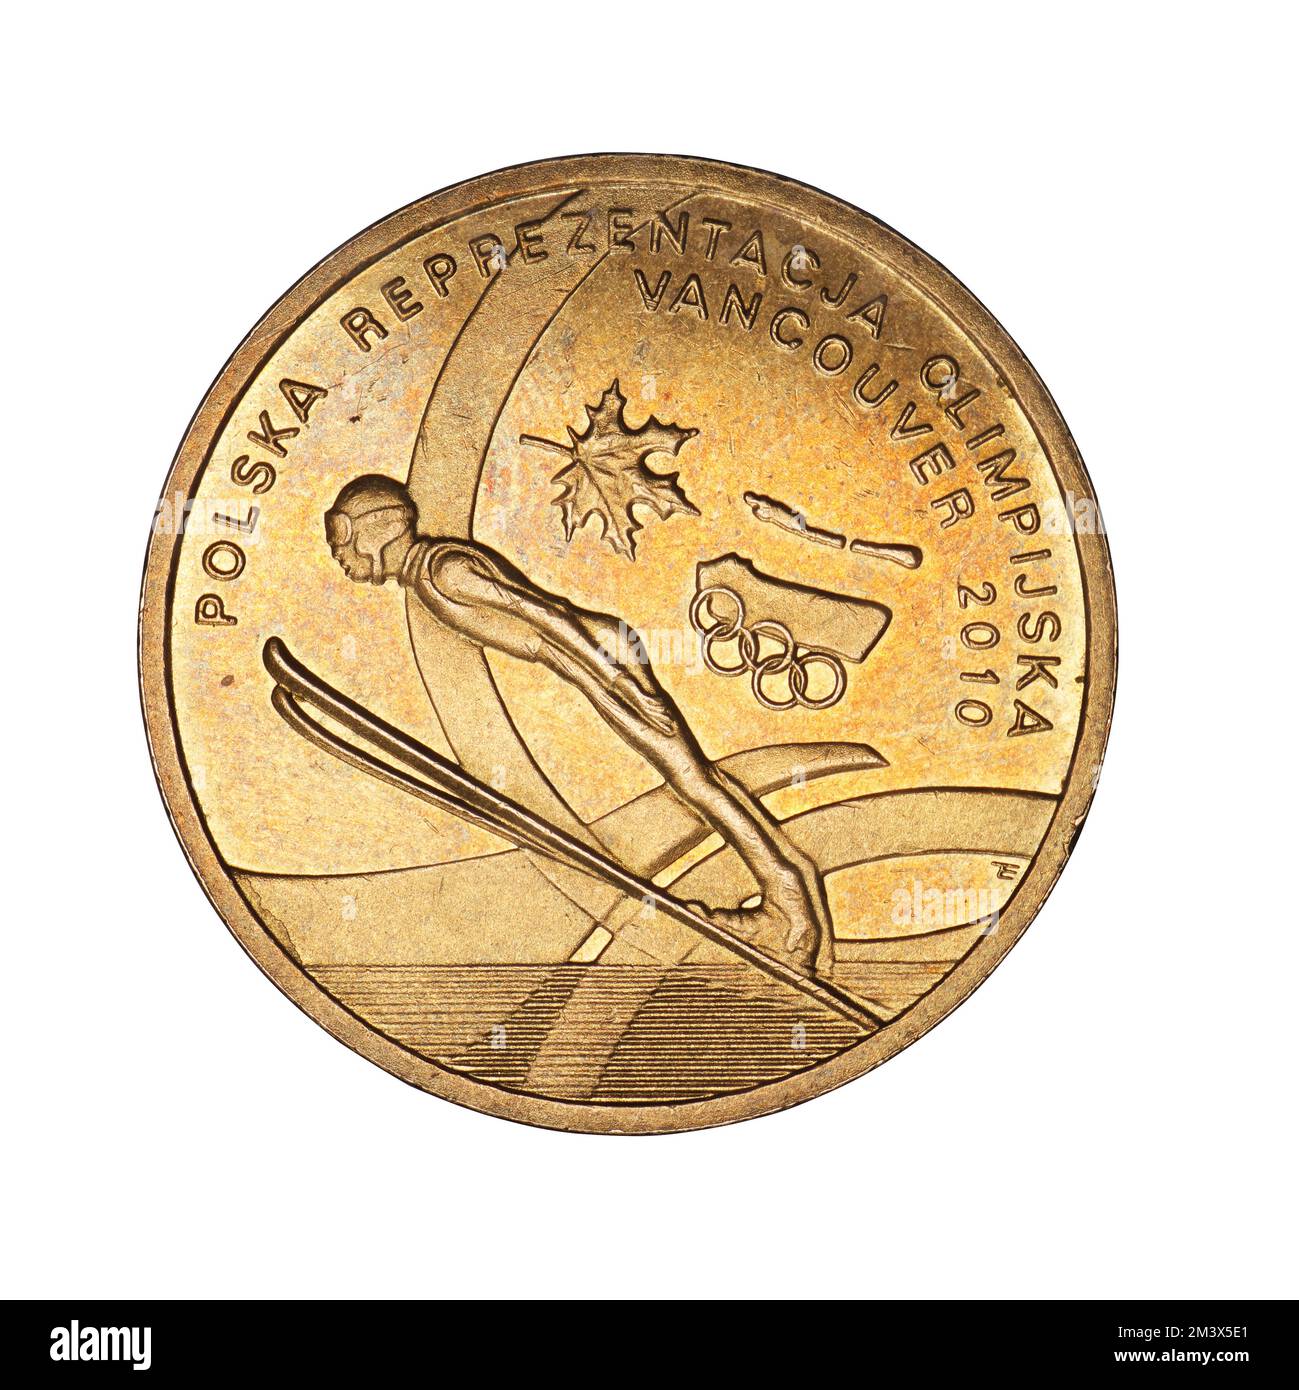 Moneta commemorativa polacca dal salto con gli sci Foto Stock